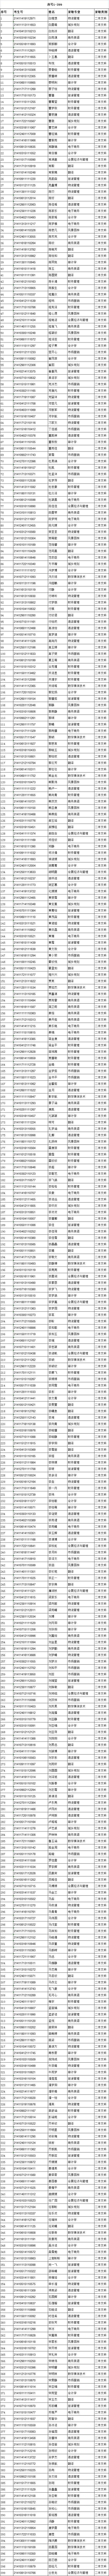 2021年信阳农林学院在河南省本科二批文科生录取名单